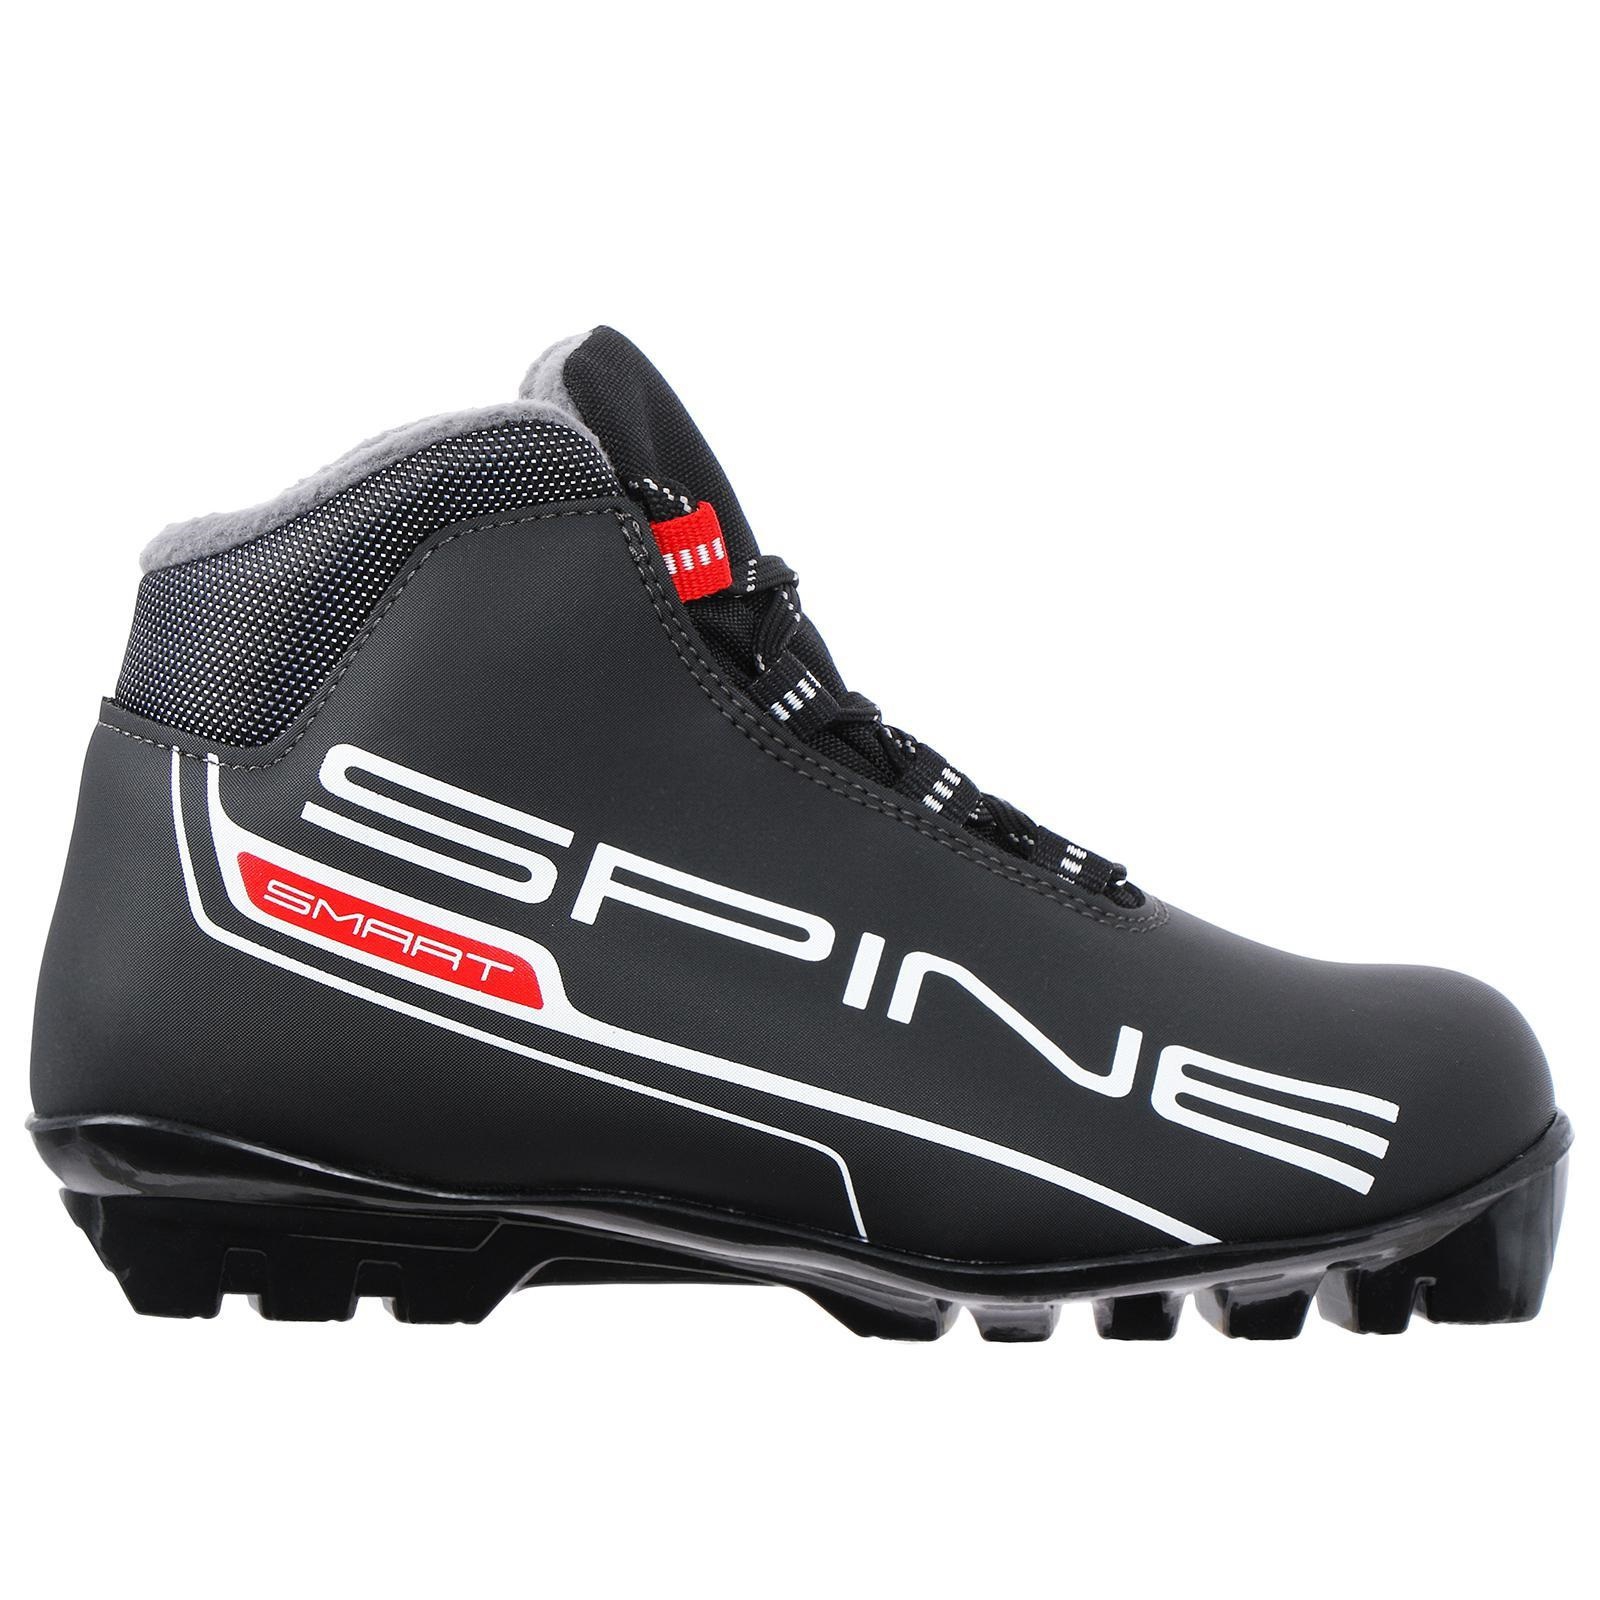 Купить лыжные ботинки spine smart 457 по отличной цене с бесплатнойдоставкой за 1 день в интернет-магазине Спортик